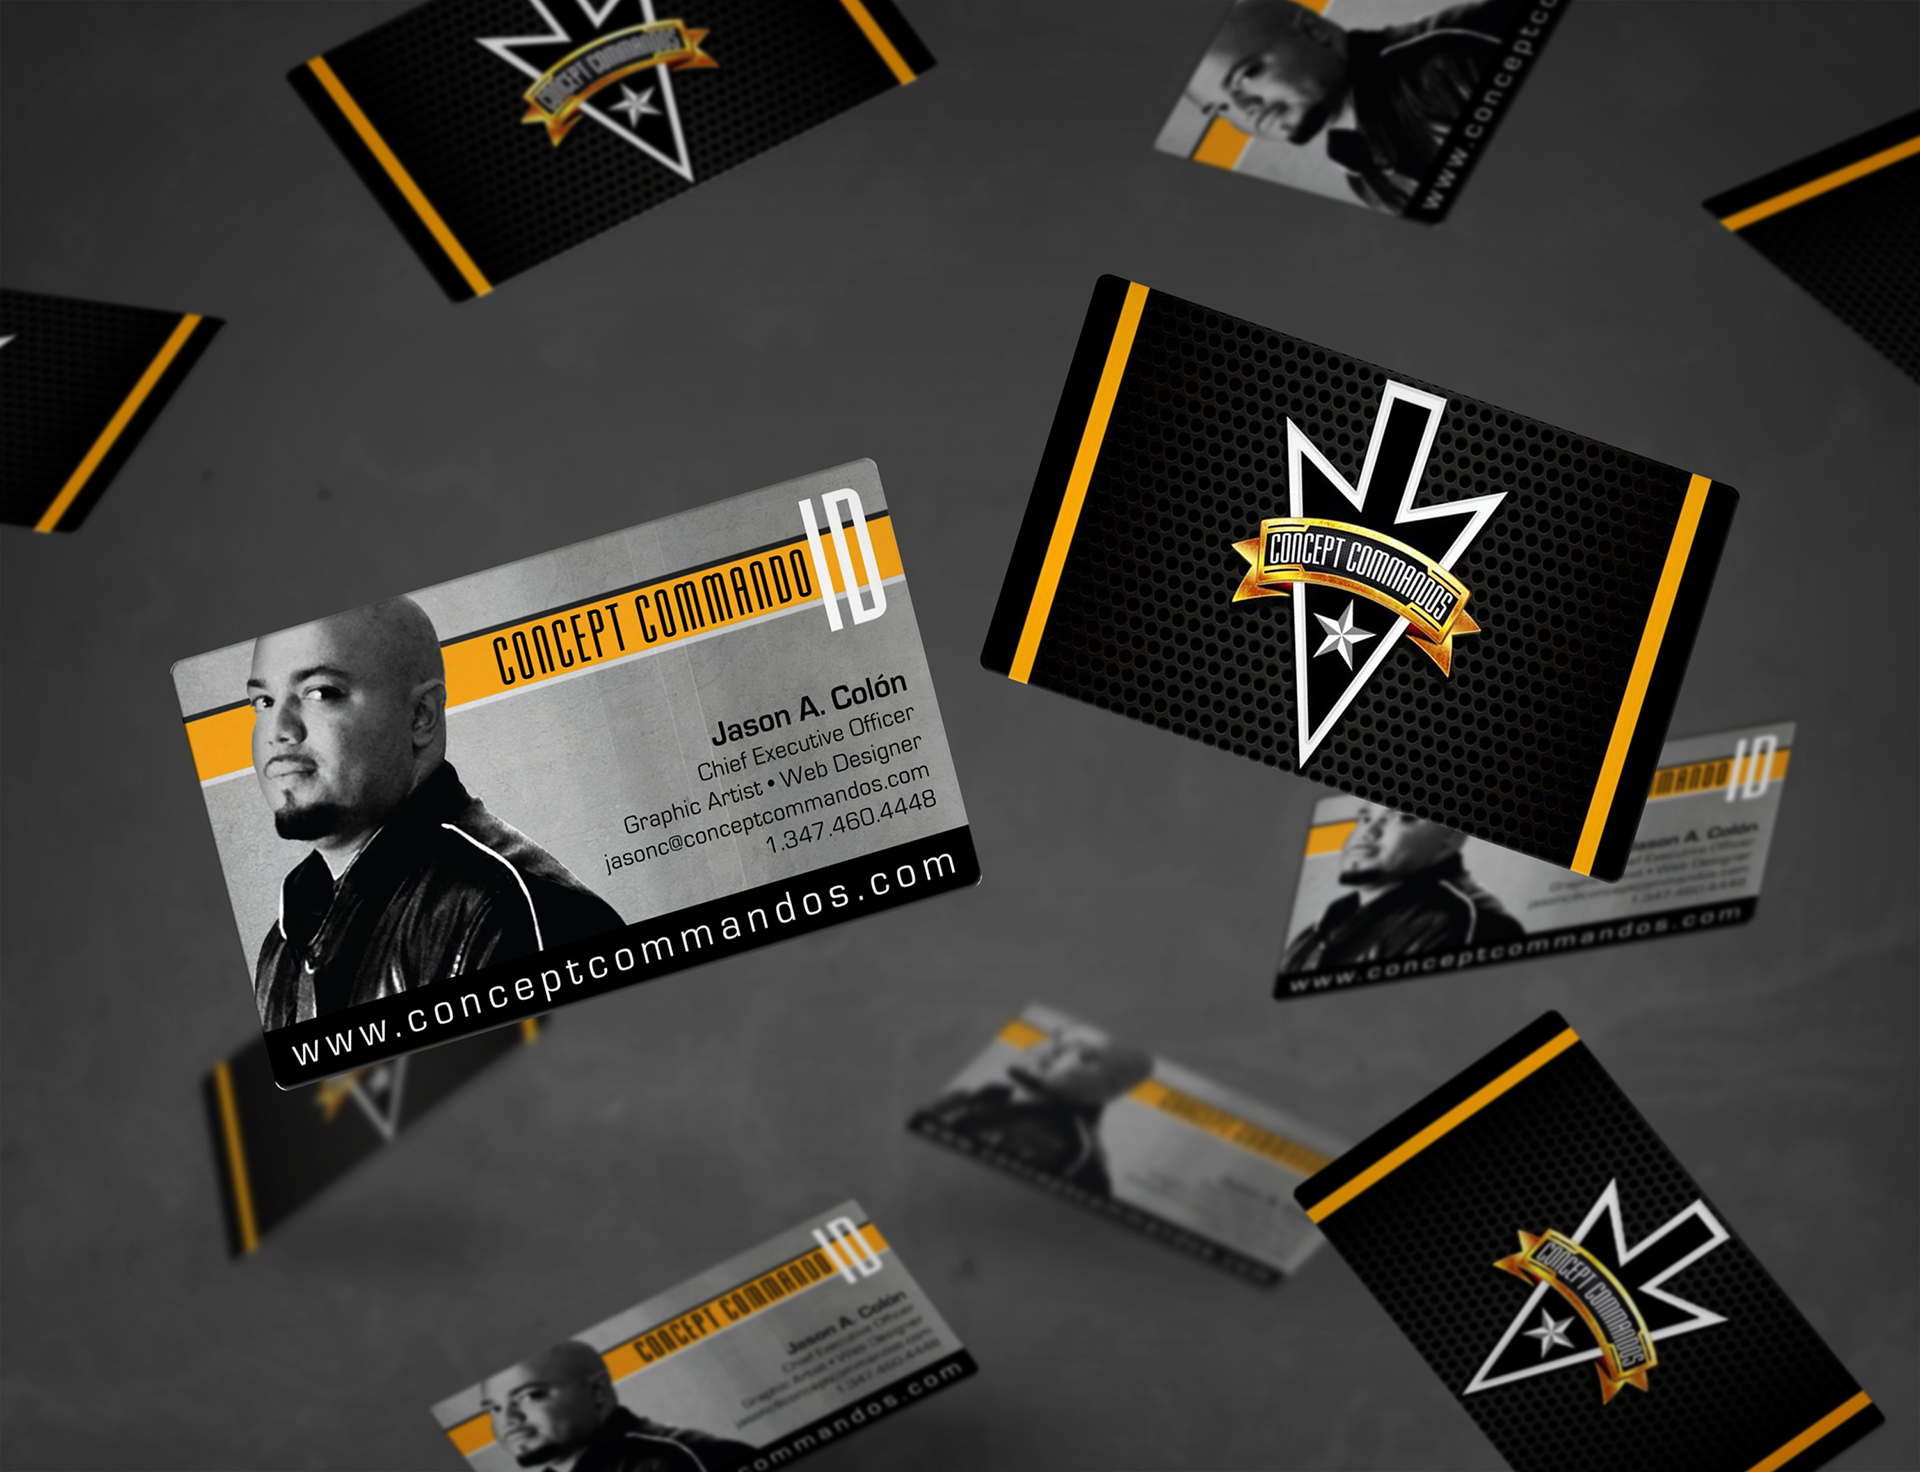 Business Cards - Concept Commandos LLC